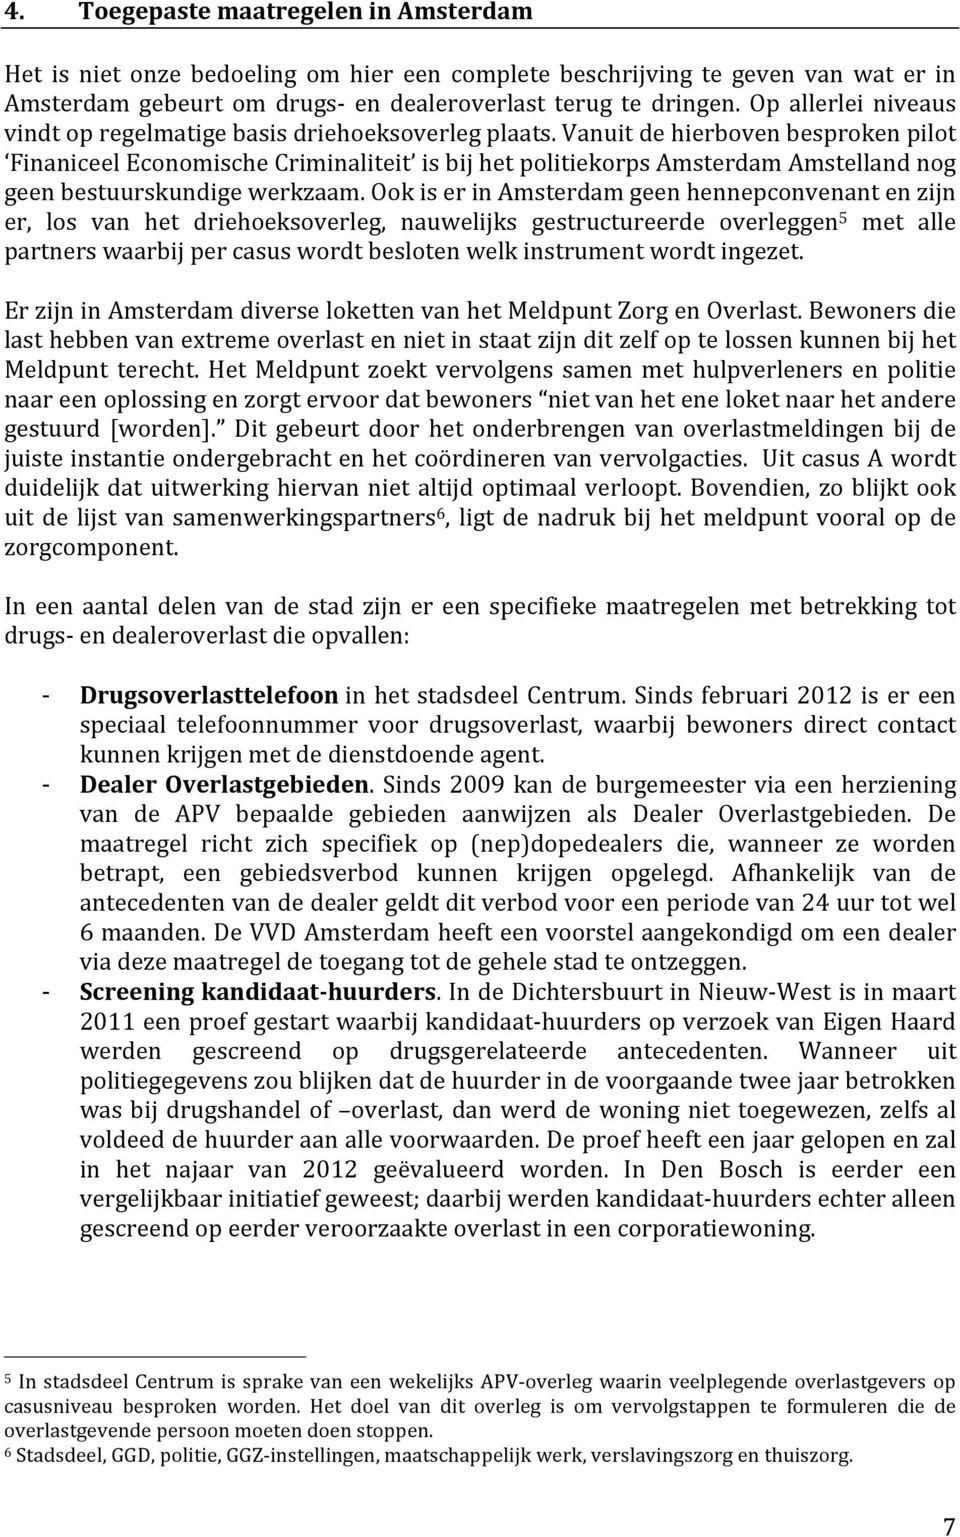 Vanuit de hierboven besproken pilot Finaniceel Economische Criminaliteit is bij het politiekorps Amsterdam Amstelland nog geen bestuurskundige werkzaam.